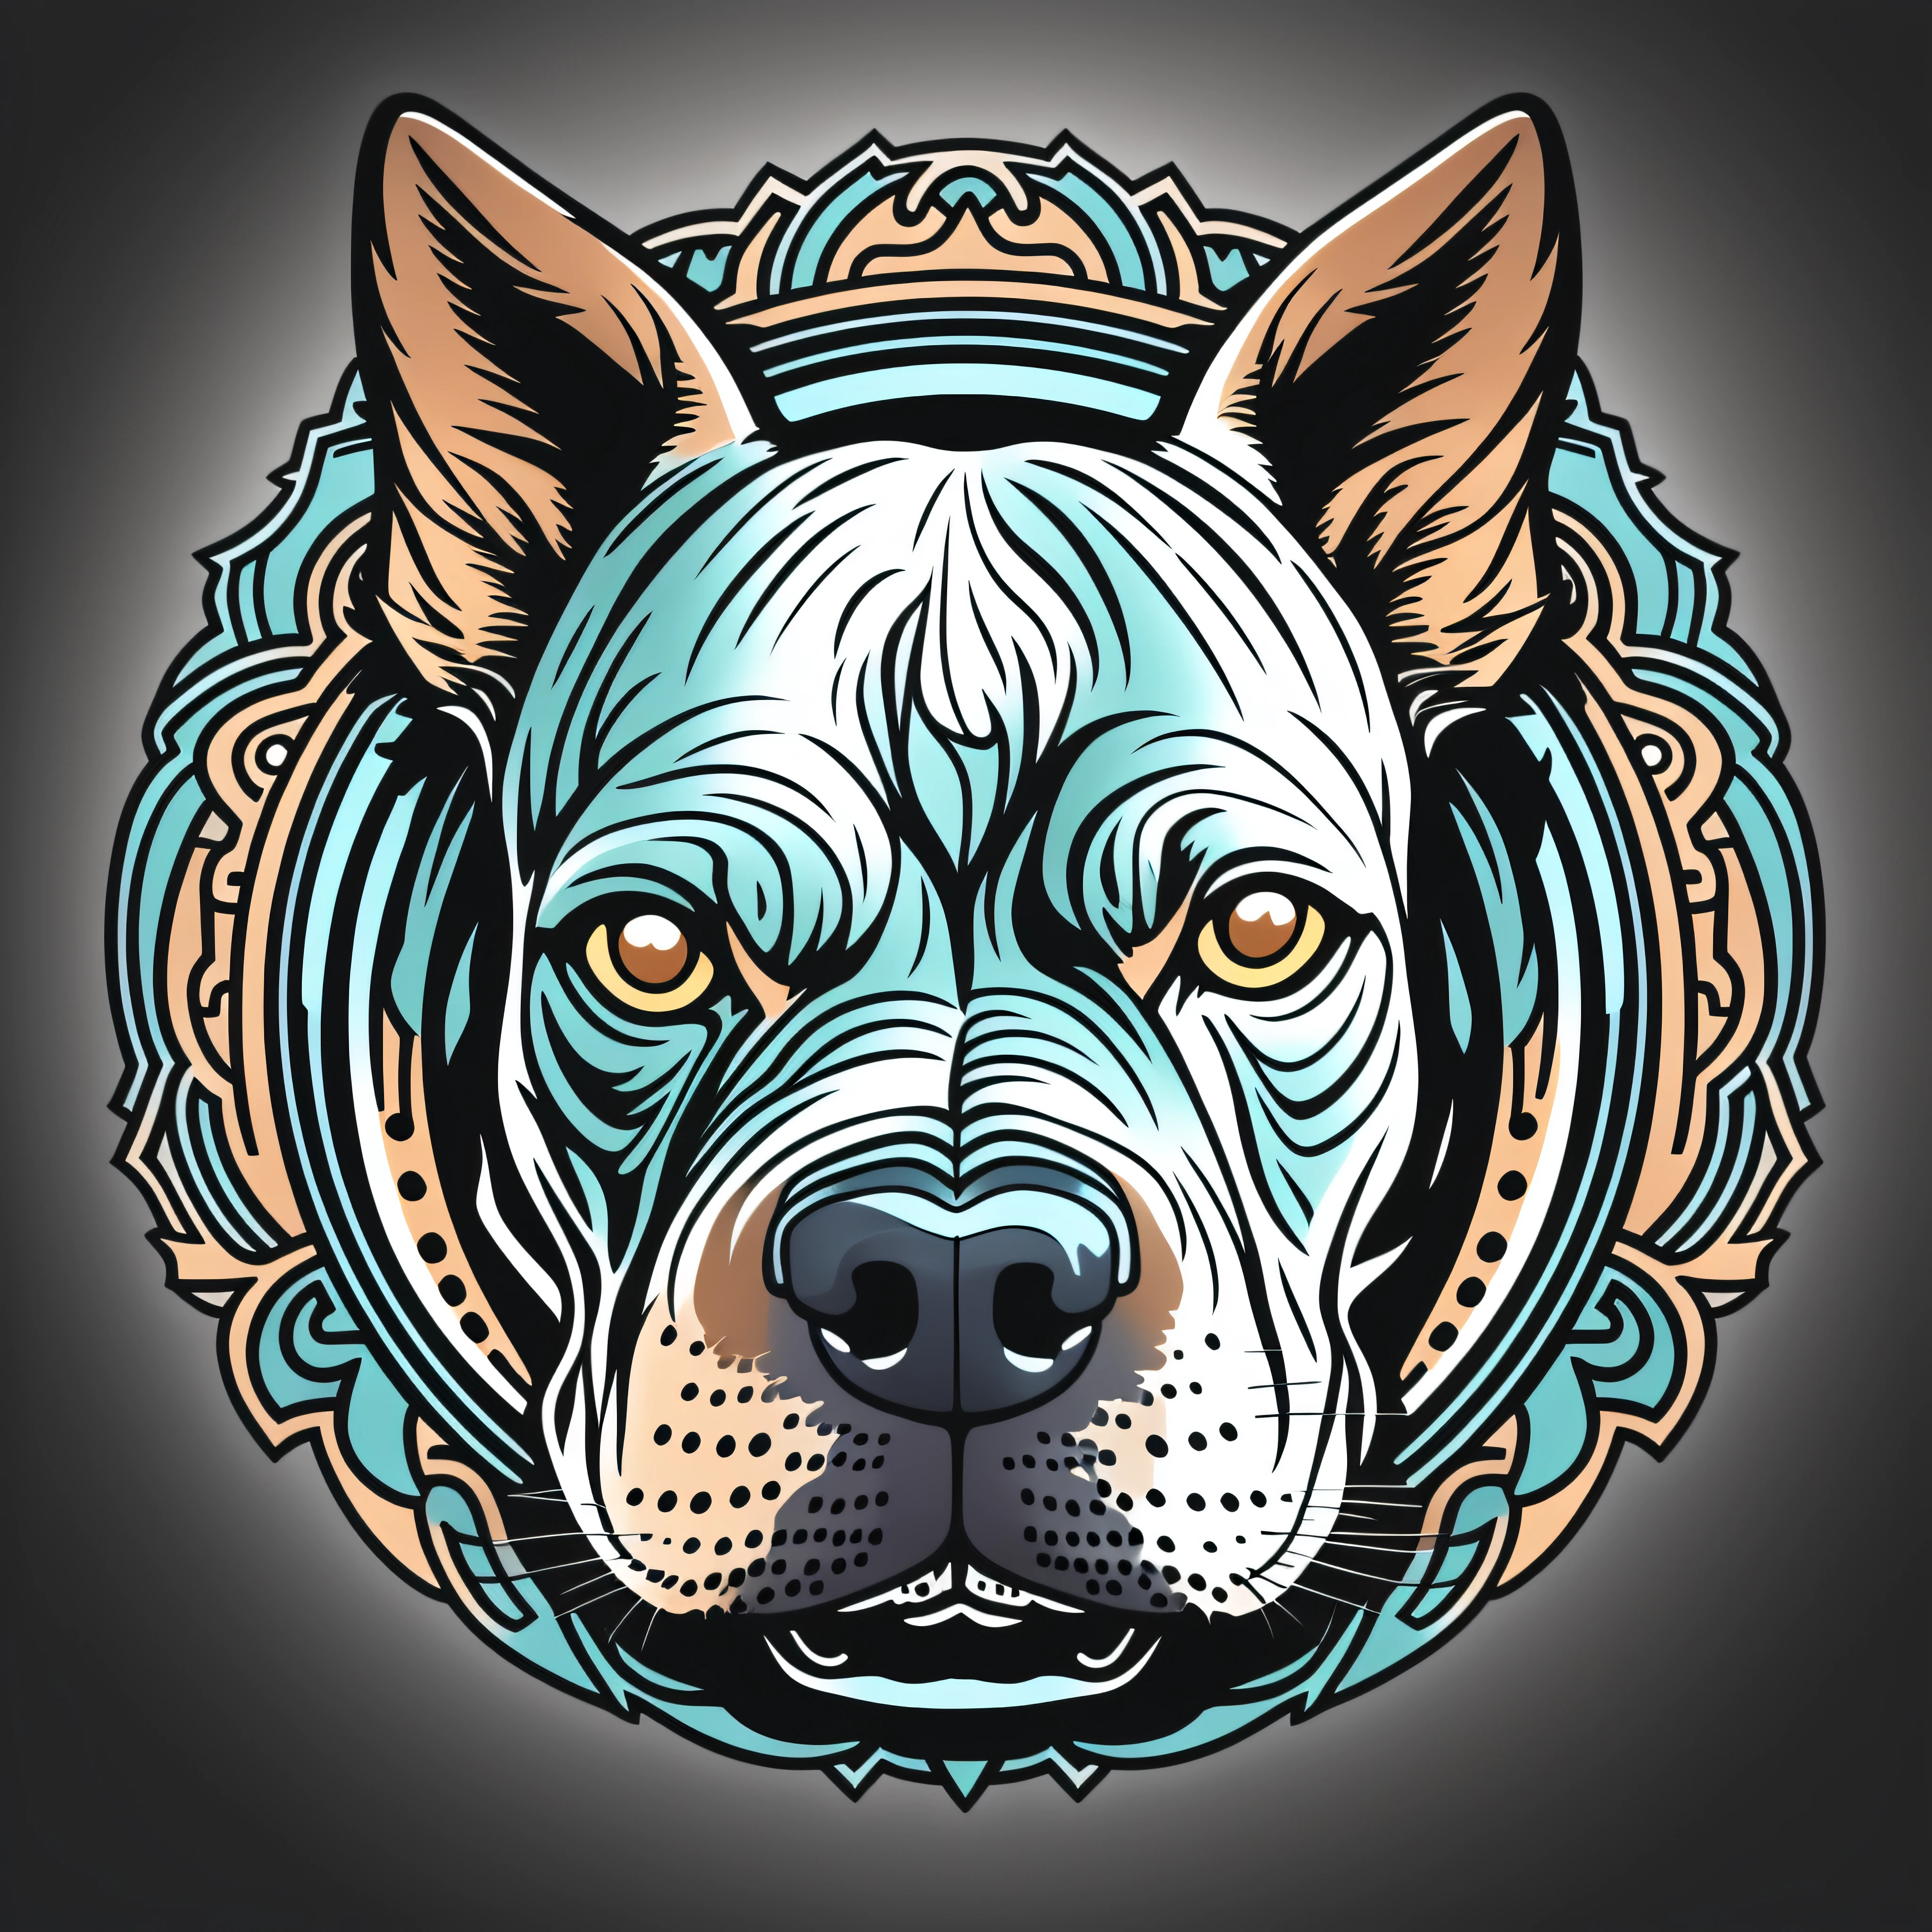 شعار رأس كلب البيتبول المذهل, 12 ك, تفاصيل .عيون زرقاء.مع محيط الدائرة, تبدو وكأنها ملصق, فن الرسوم المتحركة فيكتور آرت, شعار المصور